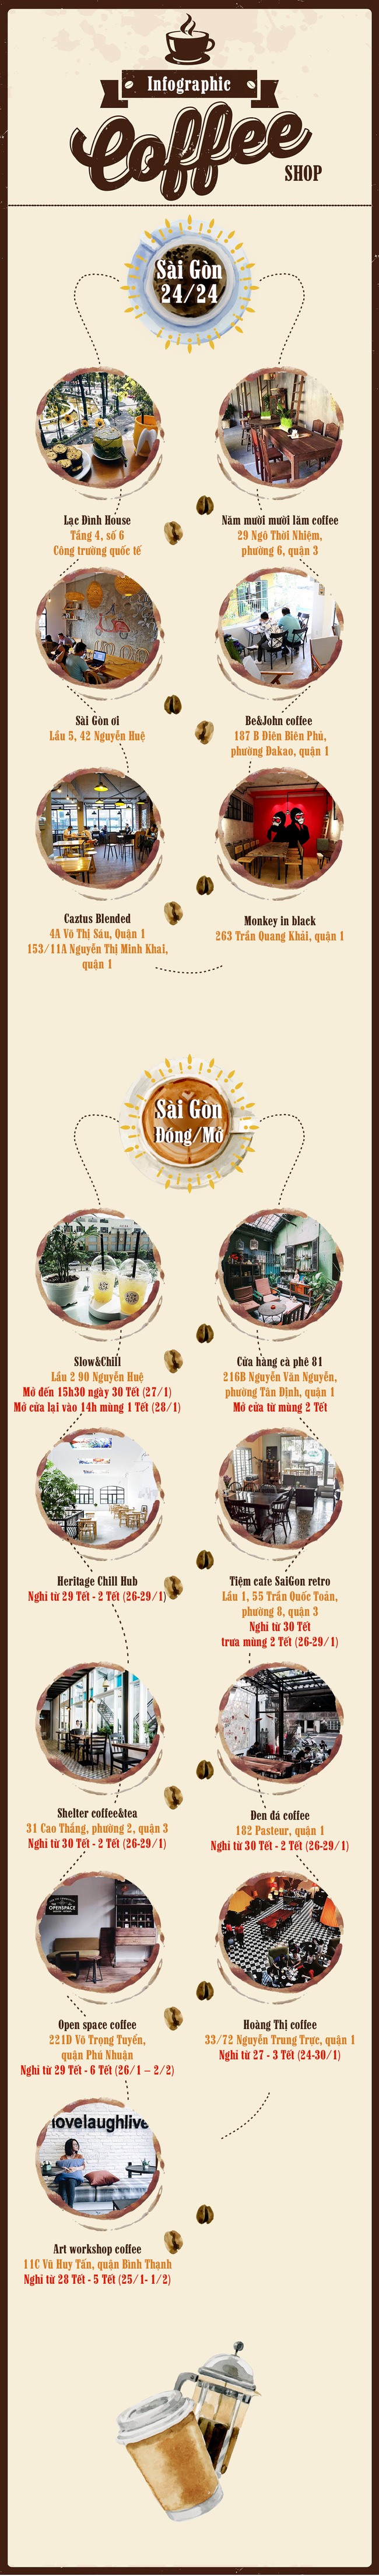 Cập nhật ngay lịch đóng/mở loạt cafe hot nhất Hà Nội - Sài Gòn dịp Tết - Ảnh 3.